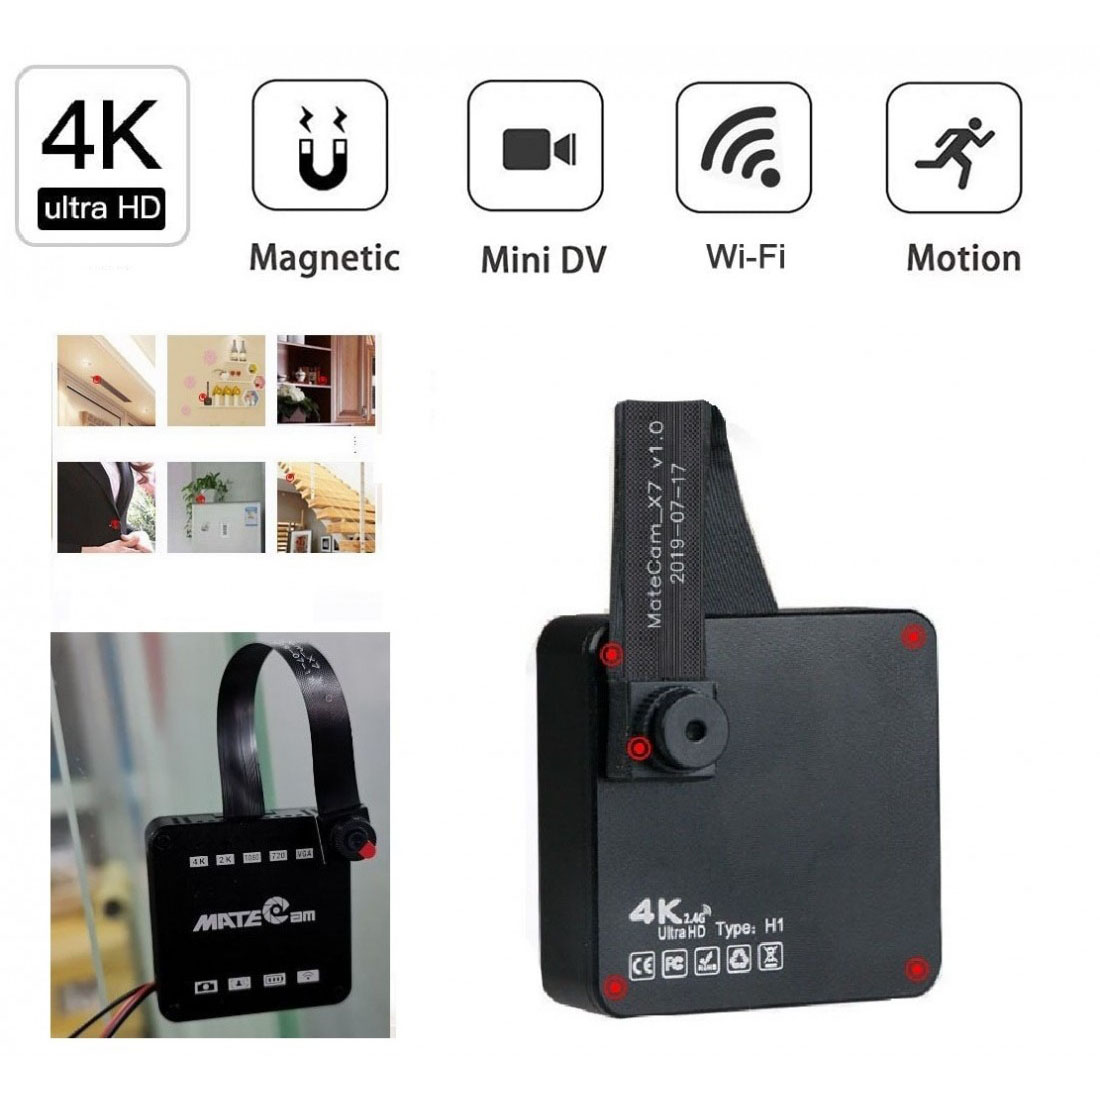 带磁铁的4K Unltra HD间谍摄像机无线隐藏摄像机，迷你便携式家庭安全电池供电的秘密Nanny Cam，小型录像机/移动式激活